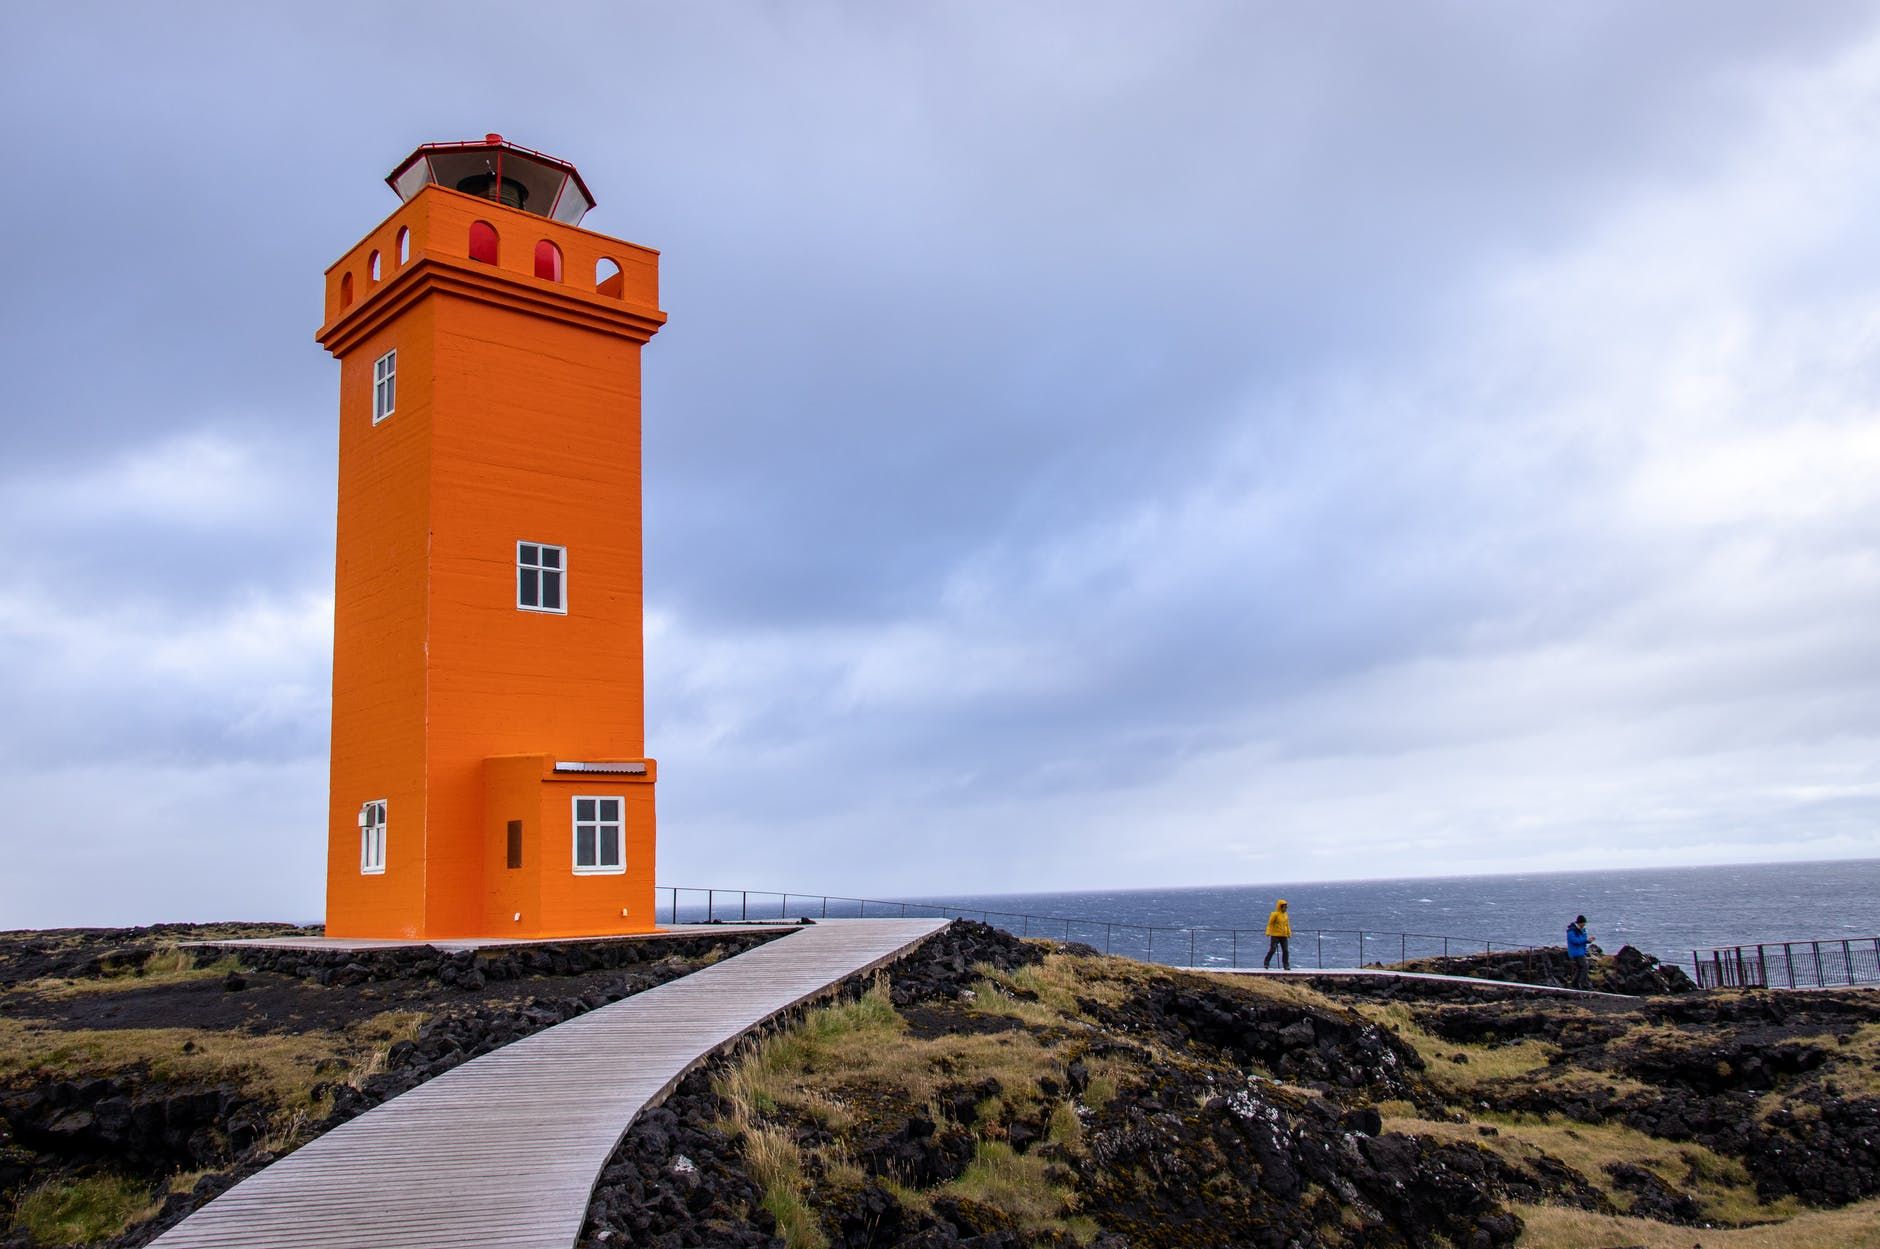 Як до пандемії: Ісландія повністю скасувала обмеження в межах країни - Travel